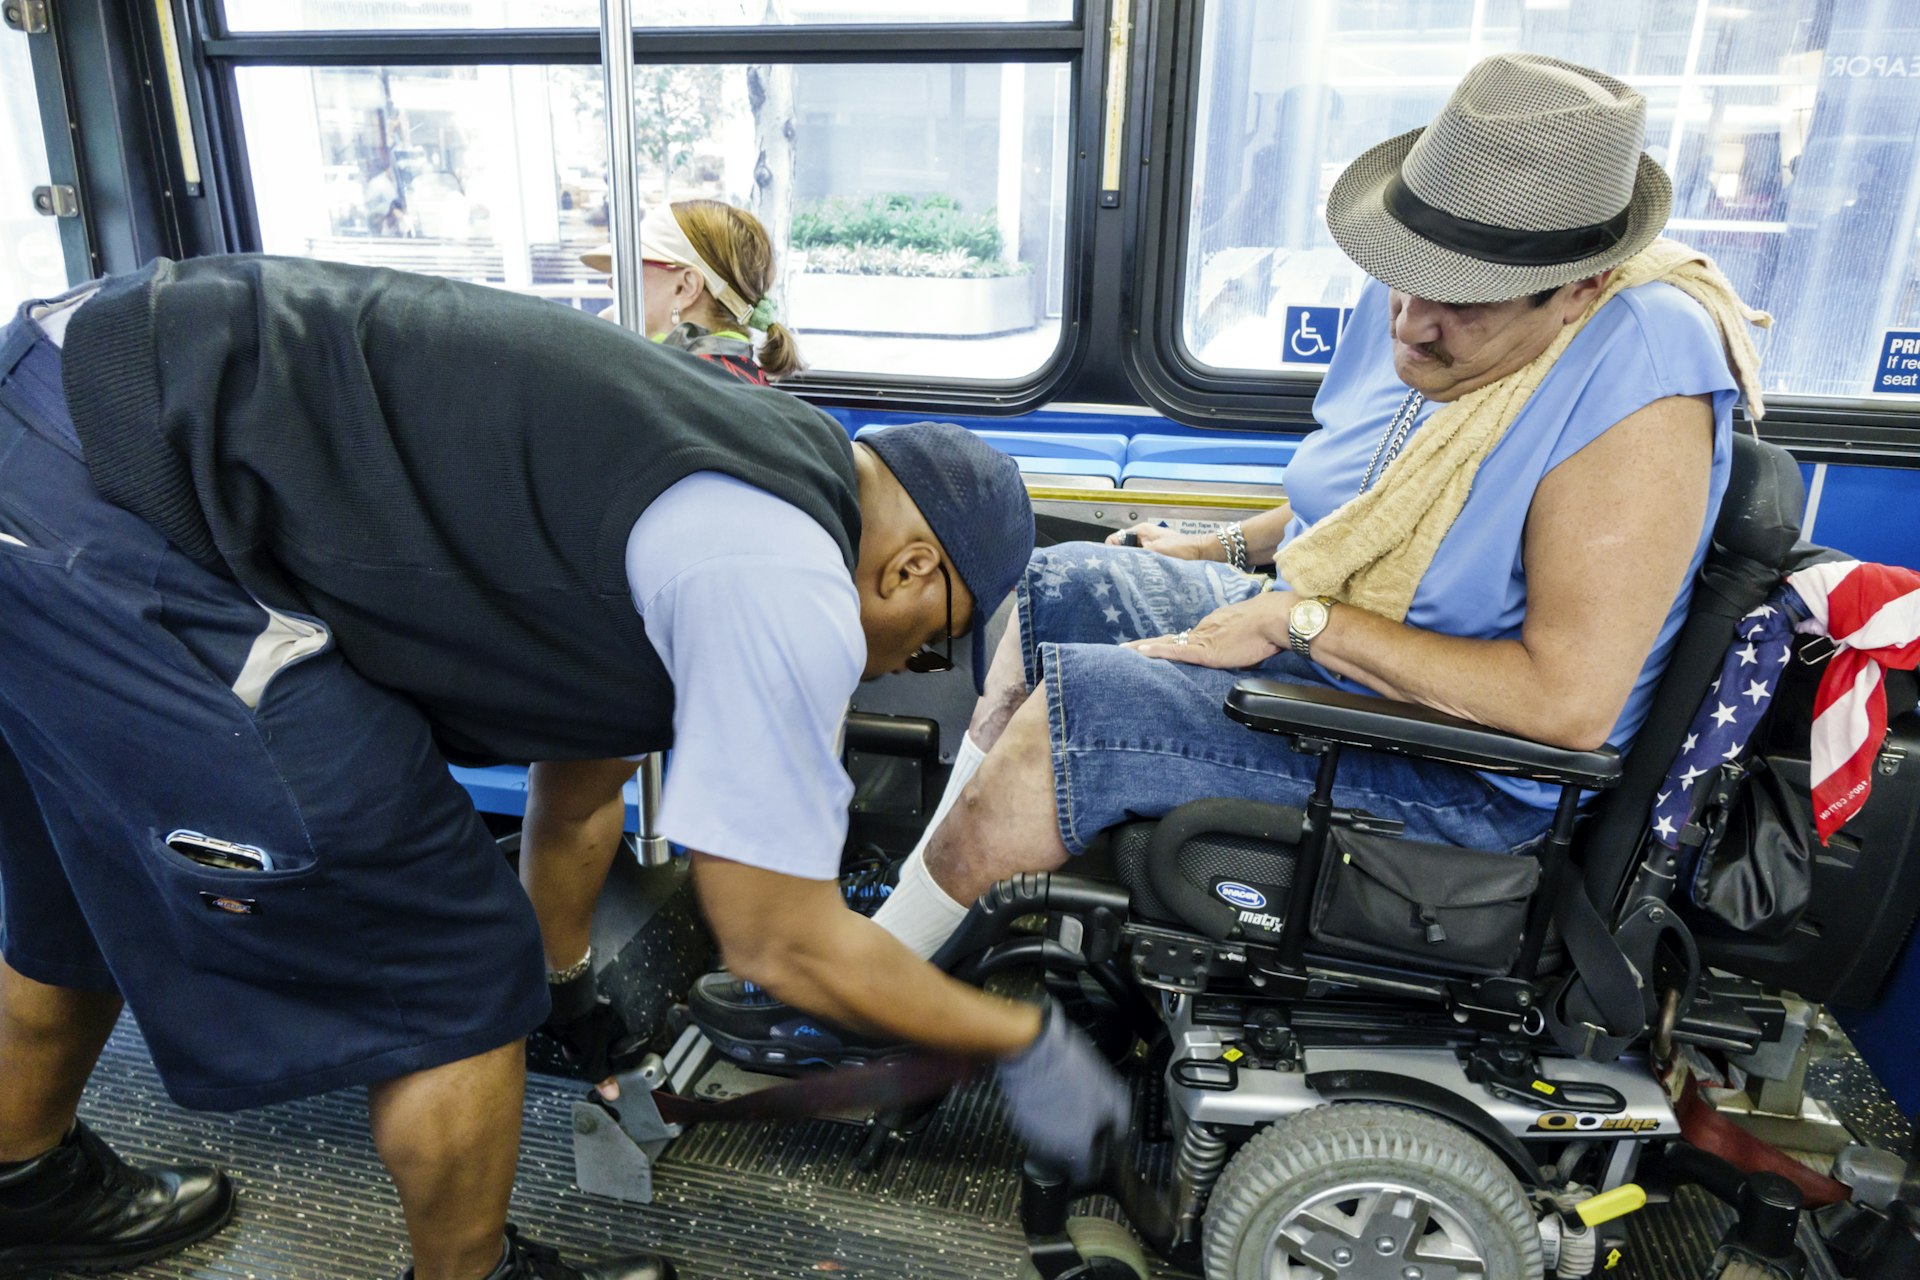 Un conductor ayuda a un hombre en una silla de ruedas eléctrica en un autobús en el Bajo Manhattan.